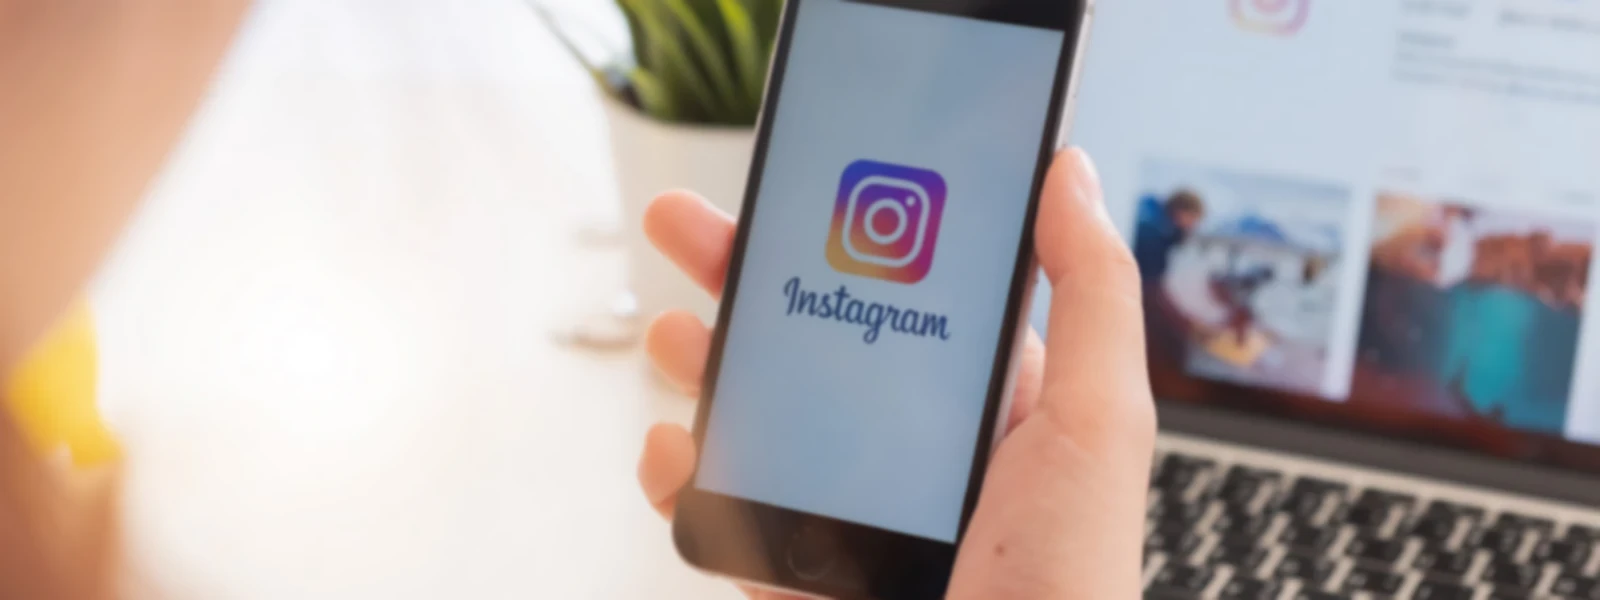 Hoe maak je een Instagram bedrijfsprofiel? 3 simpele stappen